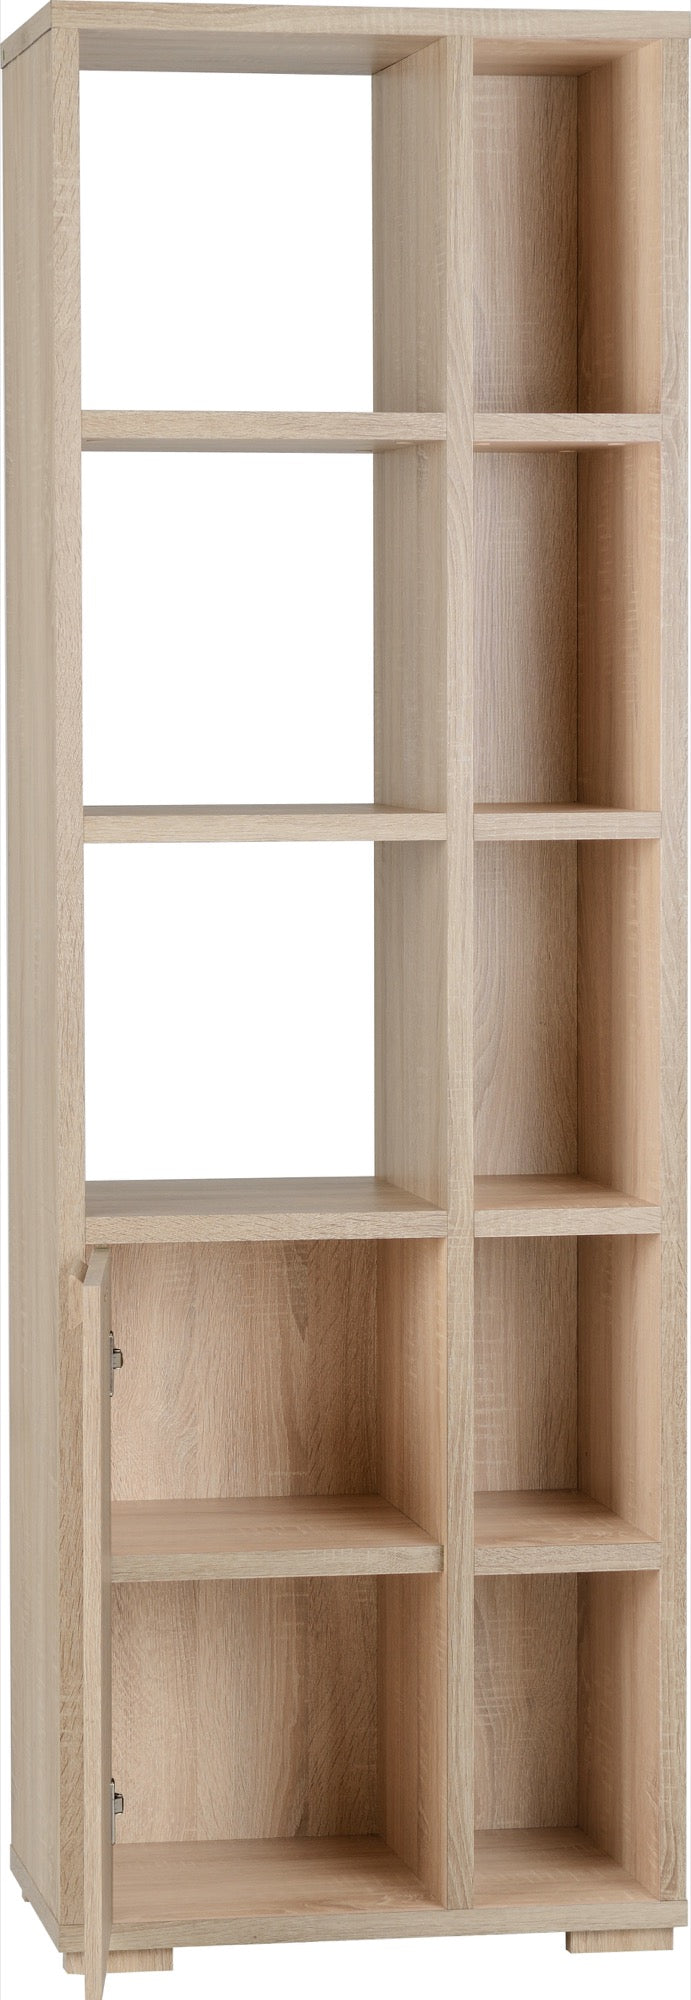 Cambourne 1 Door 5 Shelf Unit- Sonoma Oak Effect Veneer- The Right Buy Store